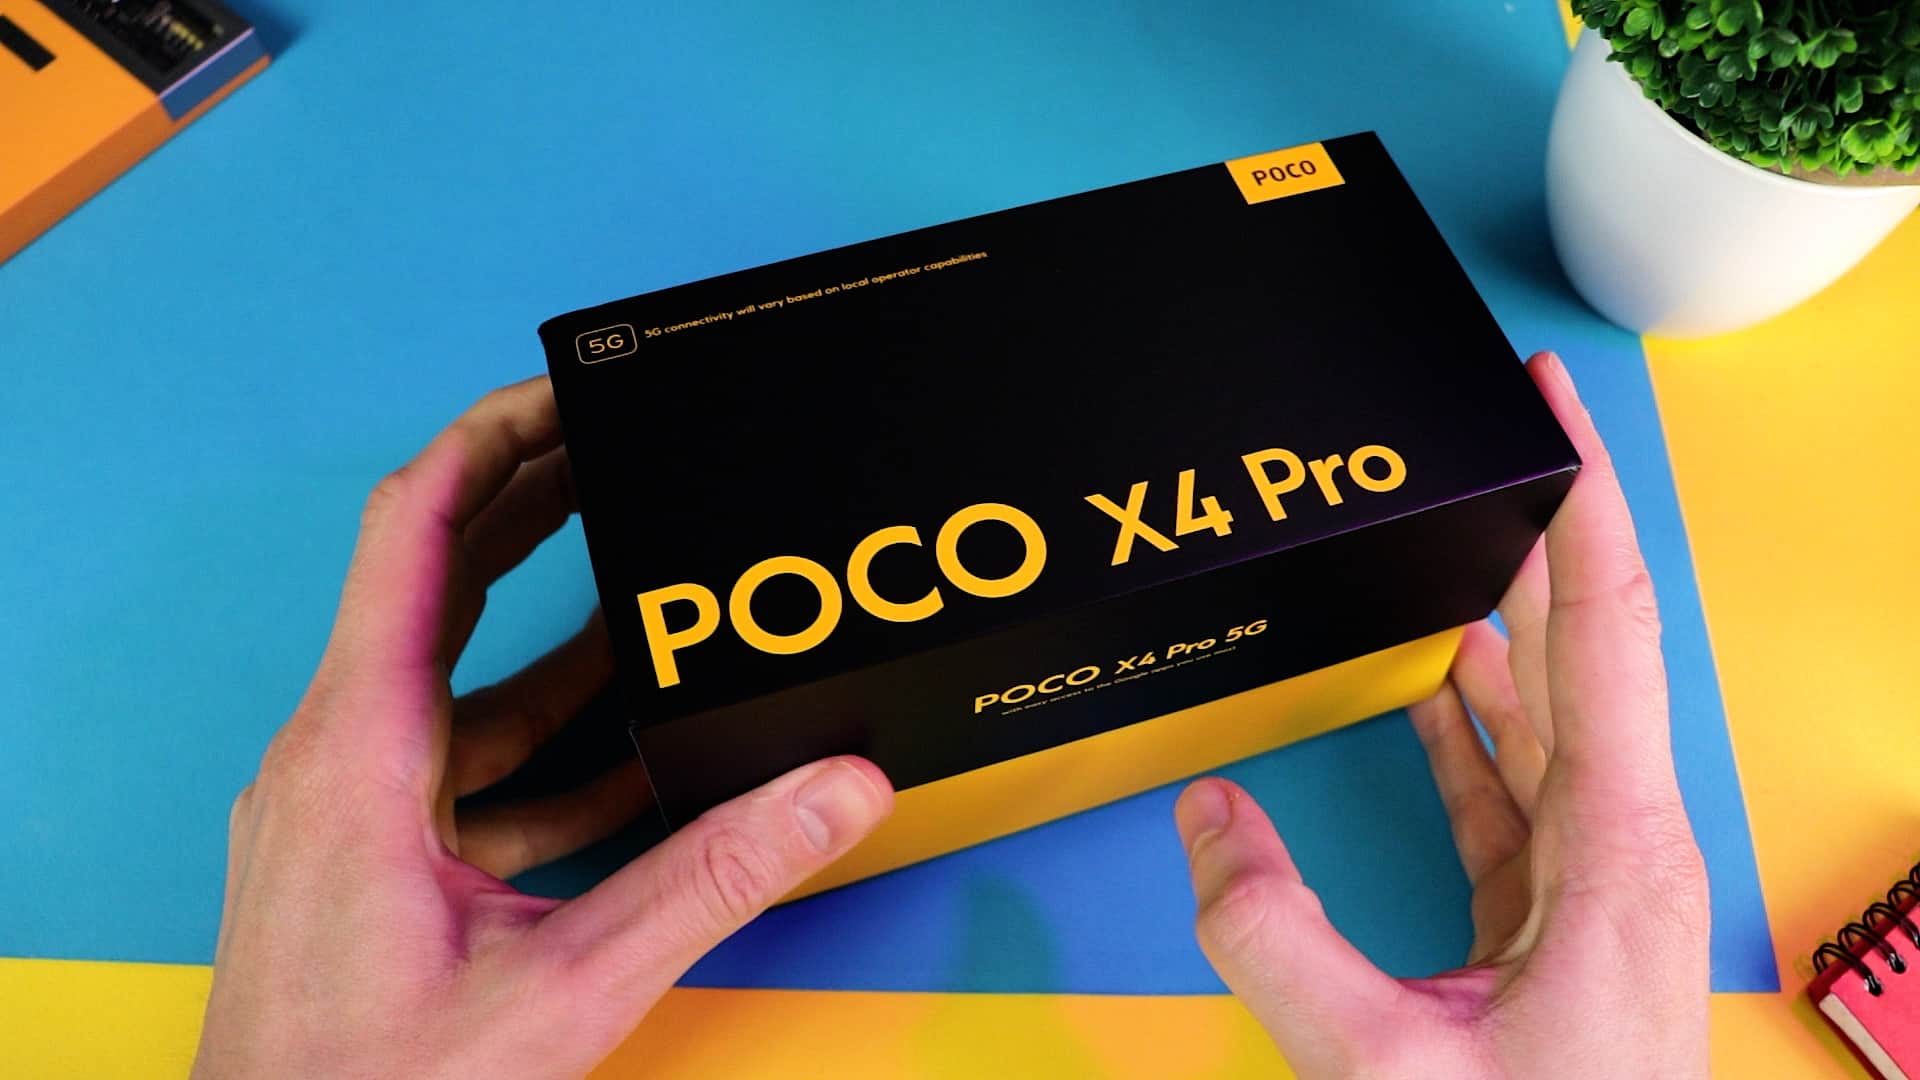 Poco X4 Pro 5G græsk unboxing fra Unboxing Lab